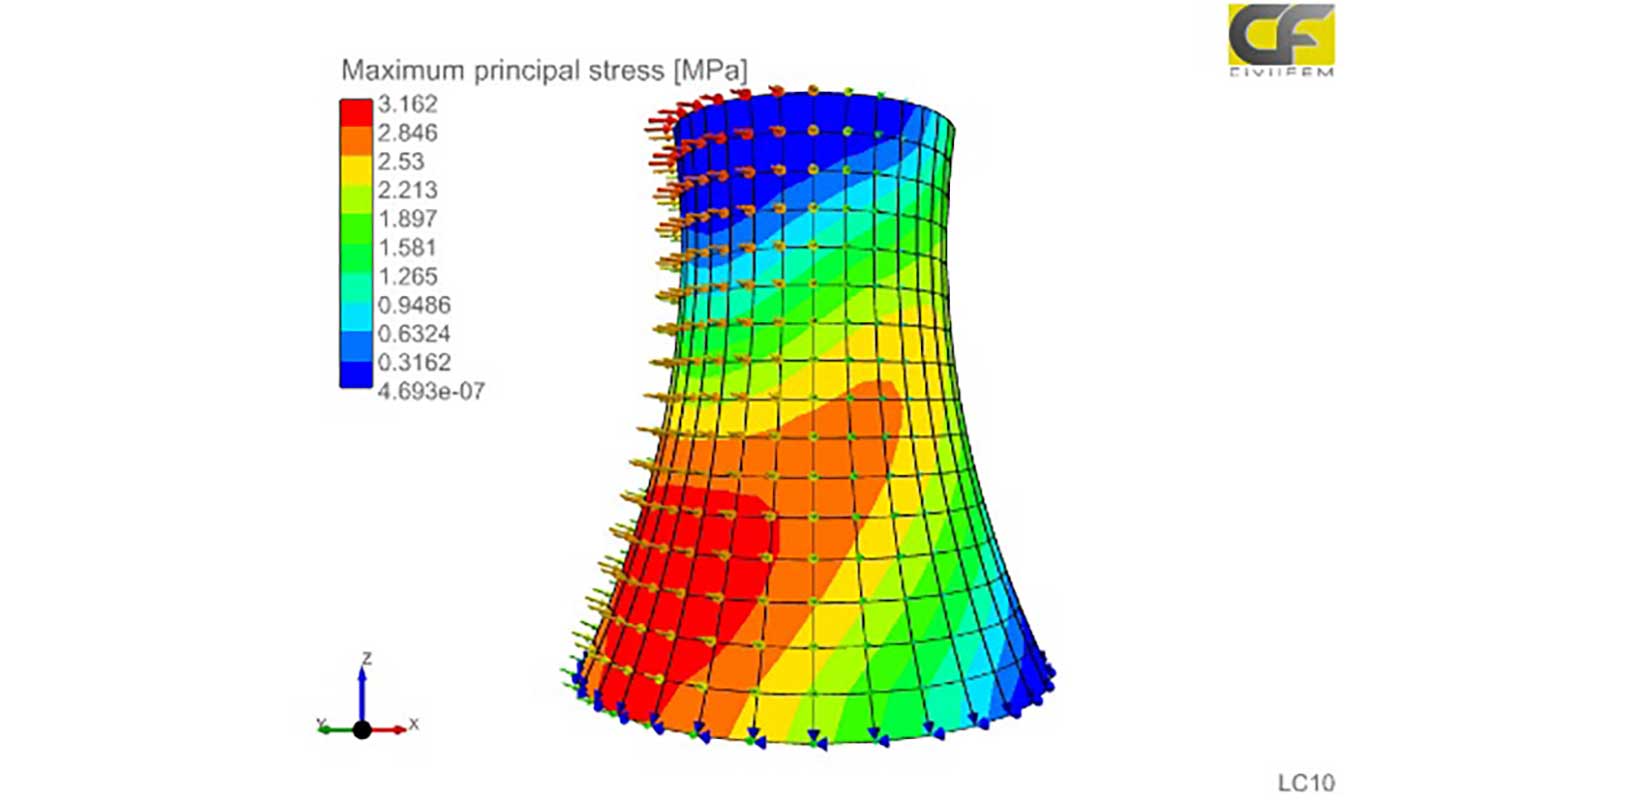 Simulación multifísica para el análisis estructural de centrales nucleares utilizando CivilFEM, con la tecnología de Marc